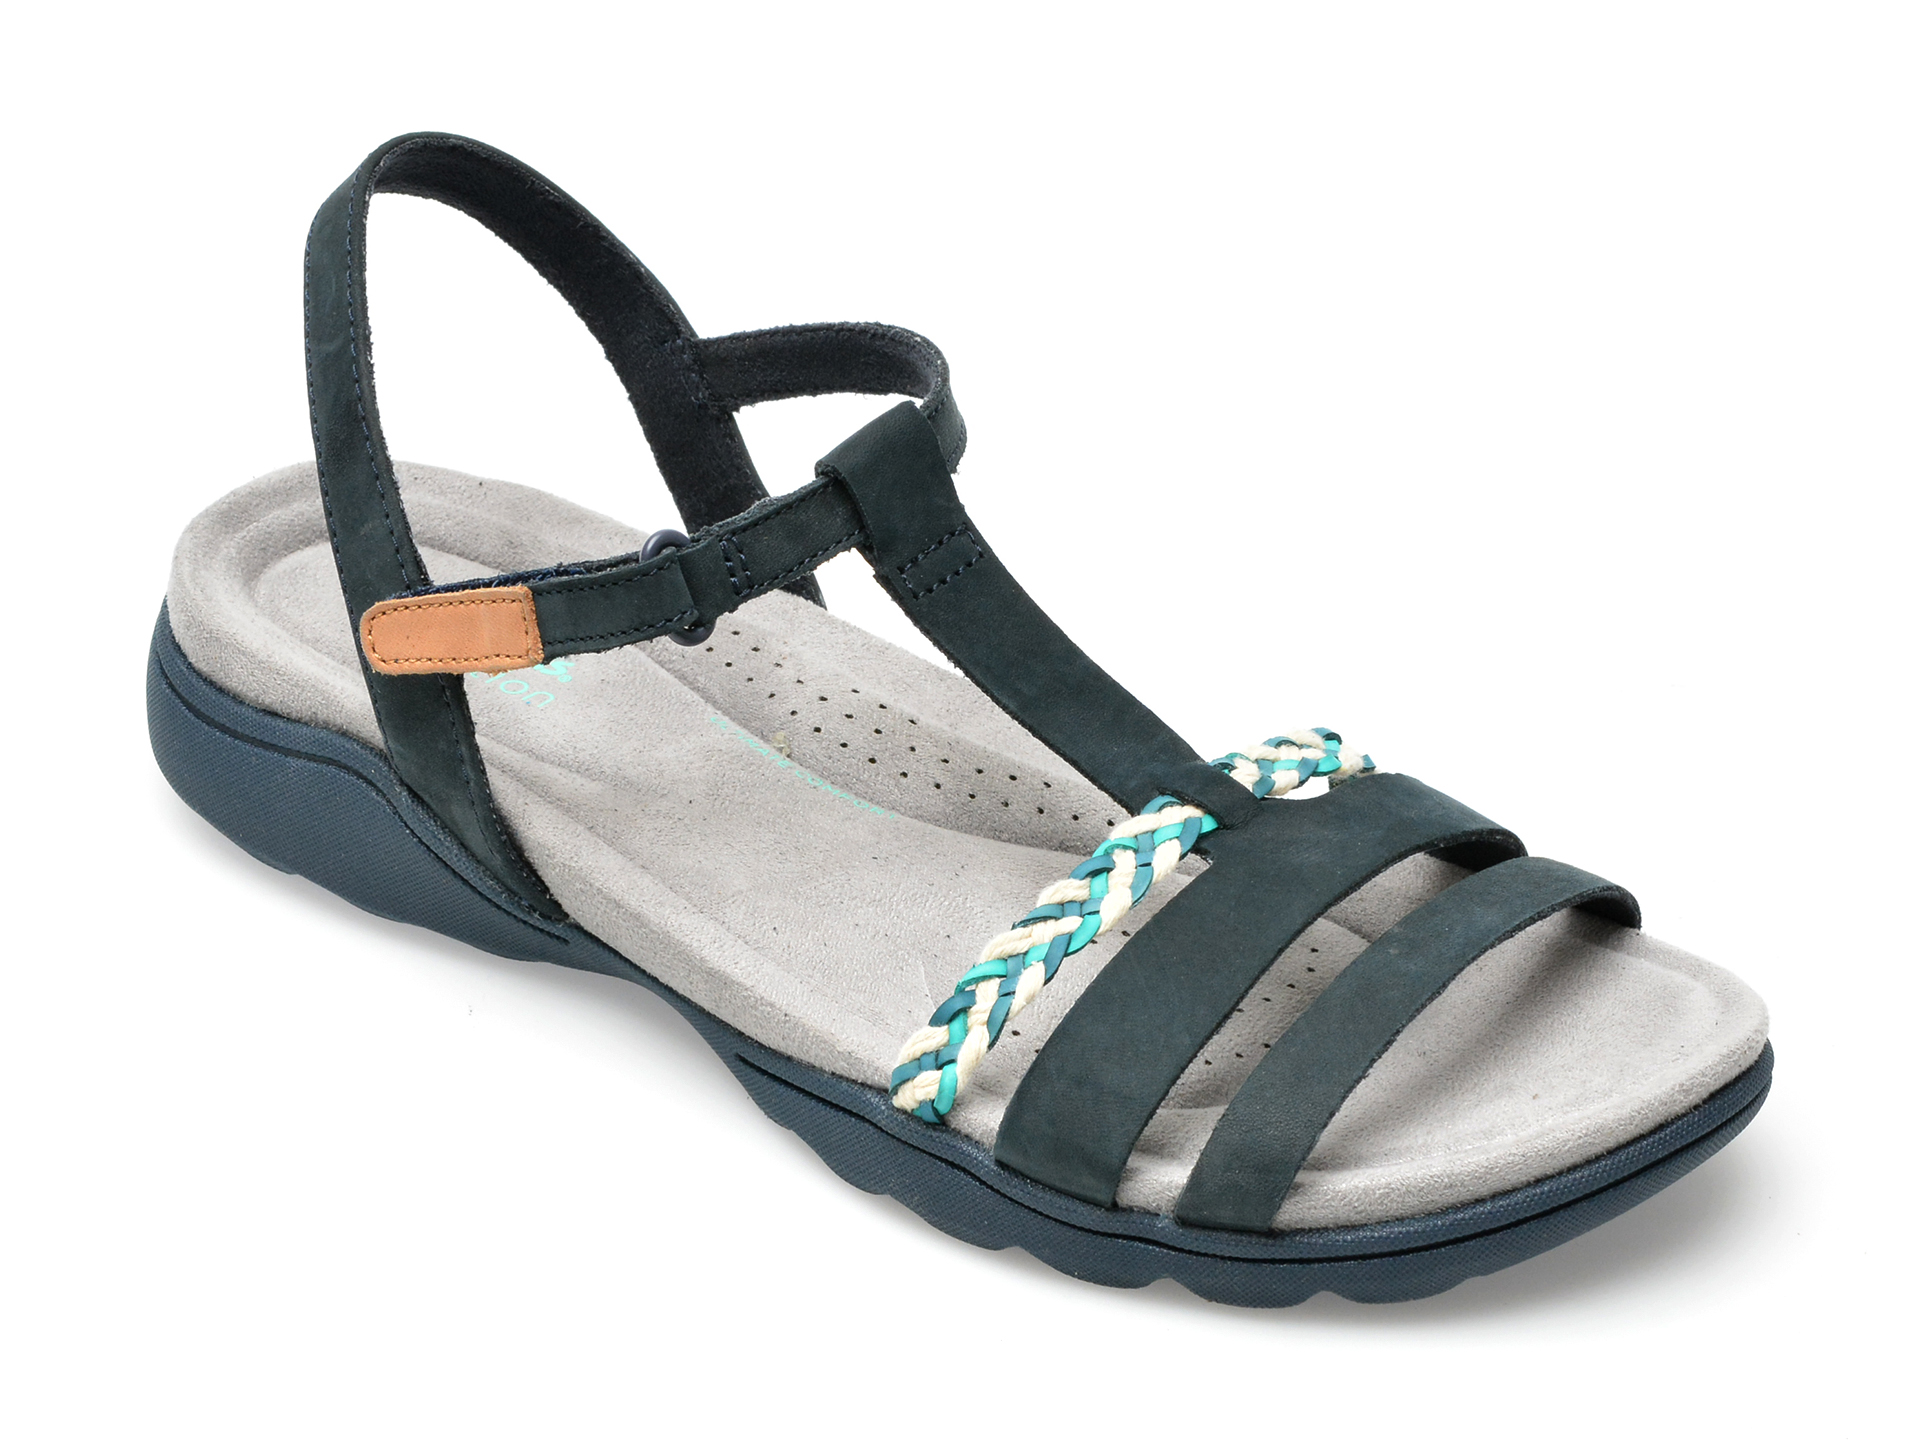 Sandale CLARKS bleumarin, AMANDA TEALITE 0912, din nabuc /femei/sandale